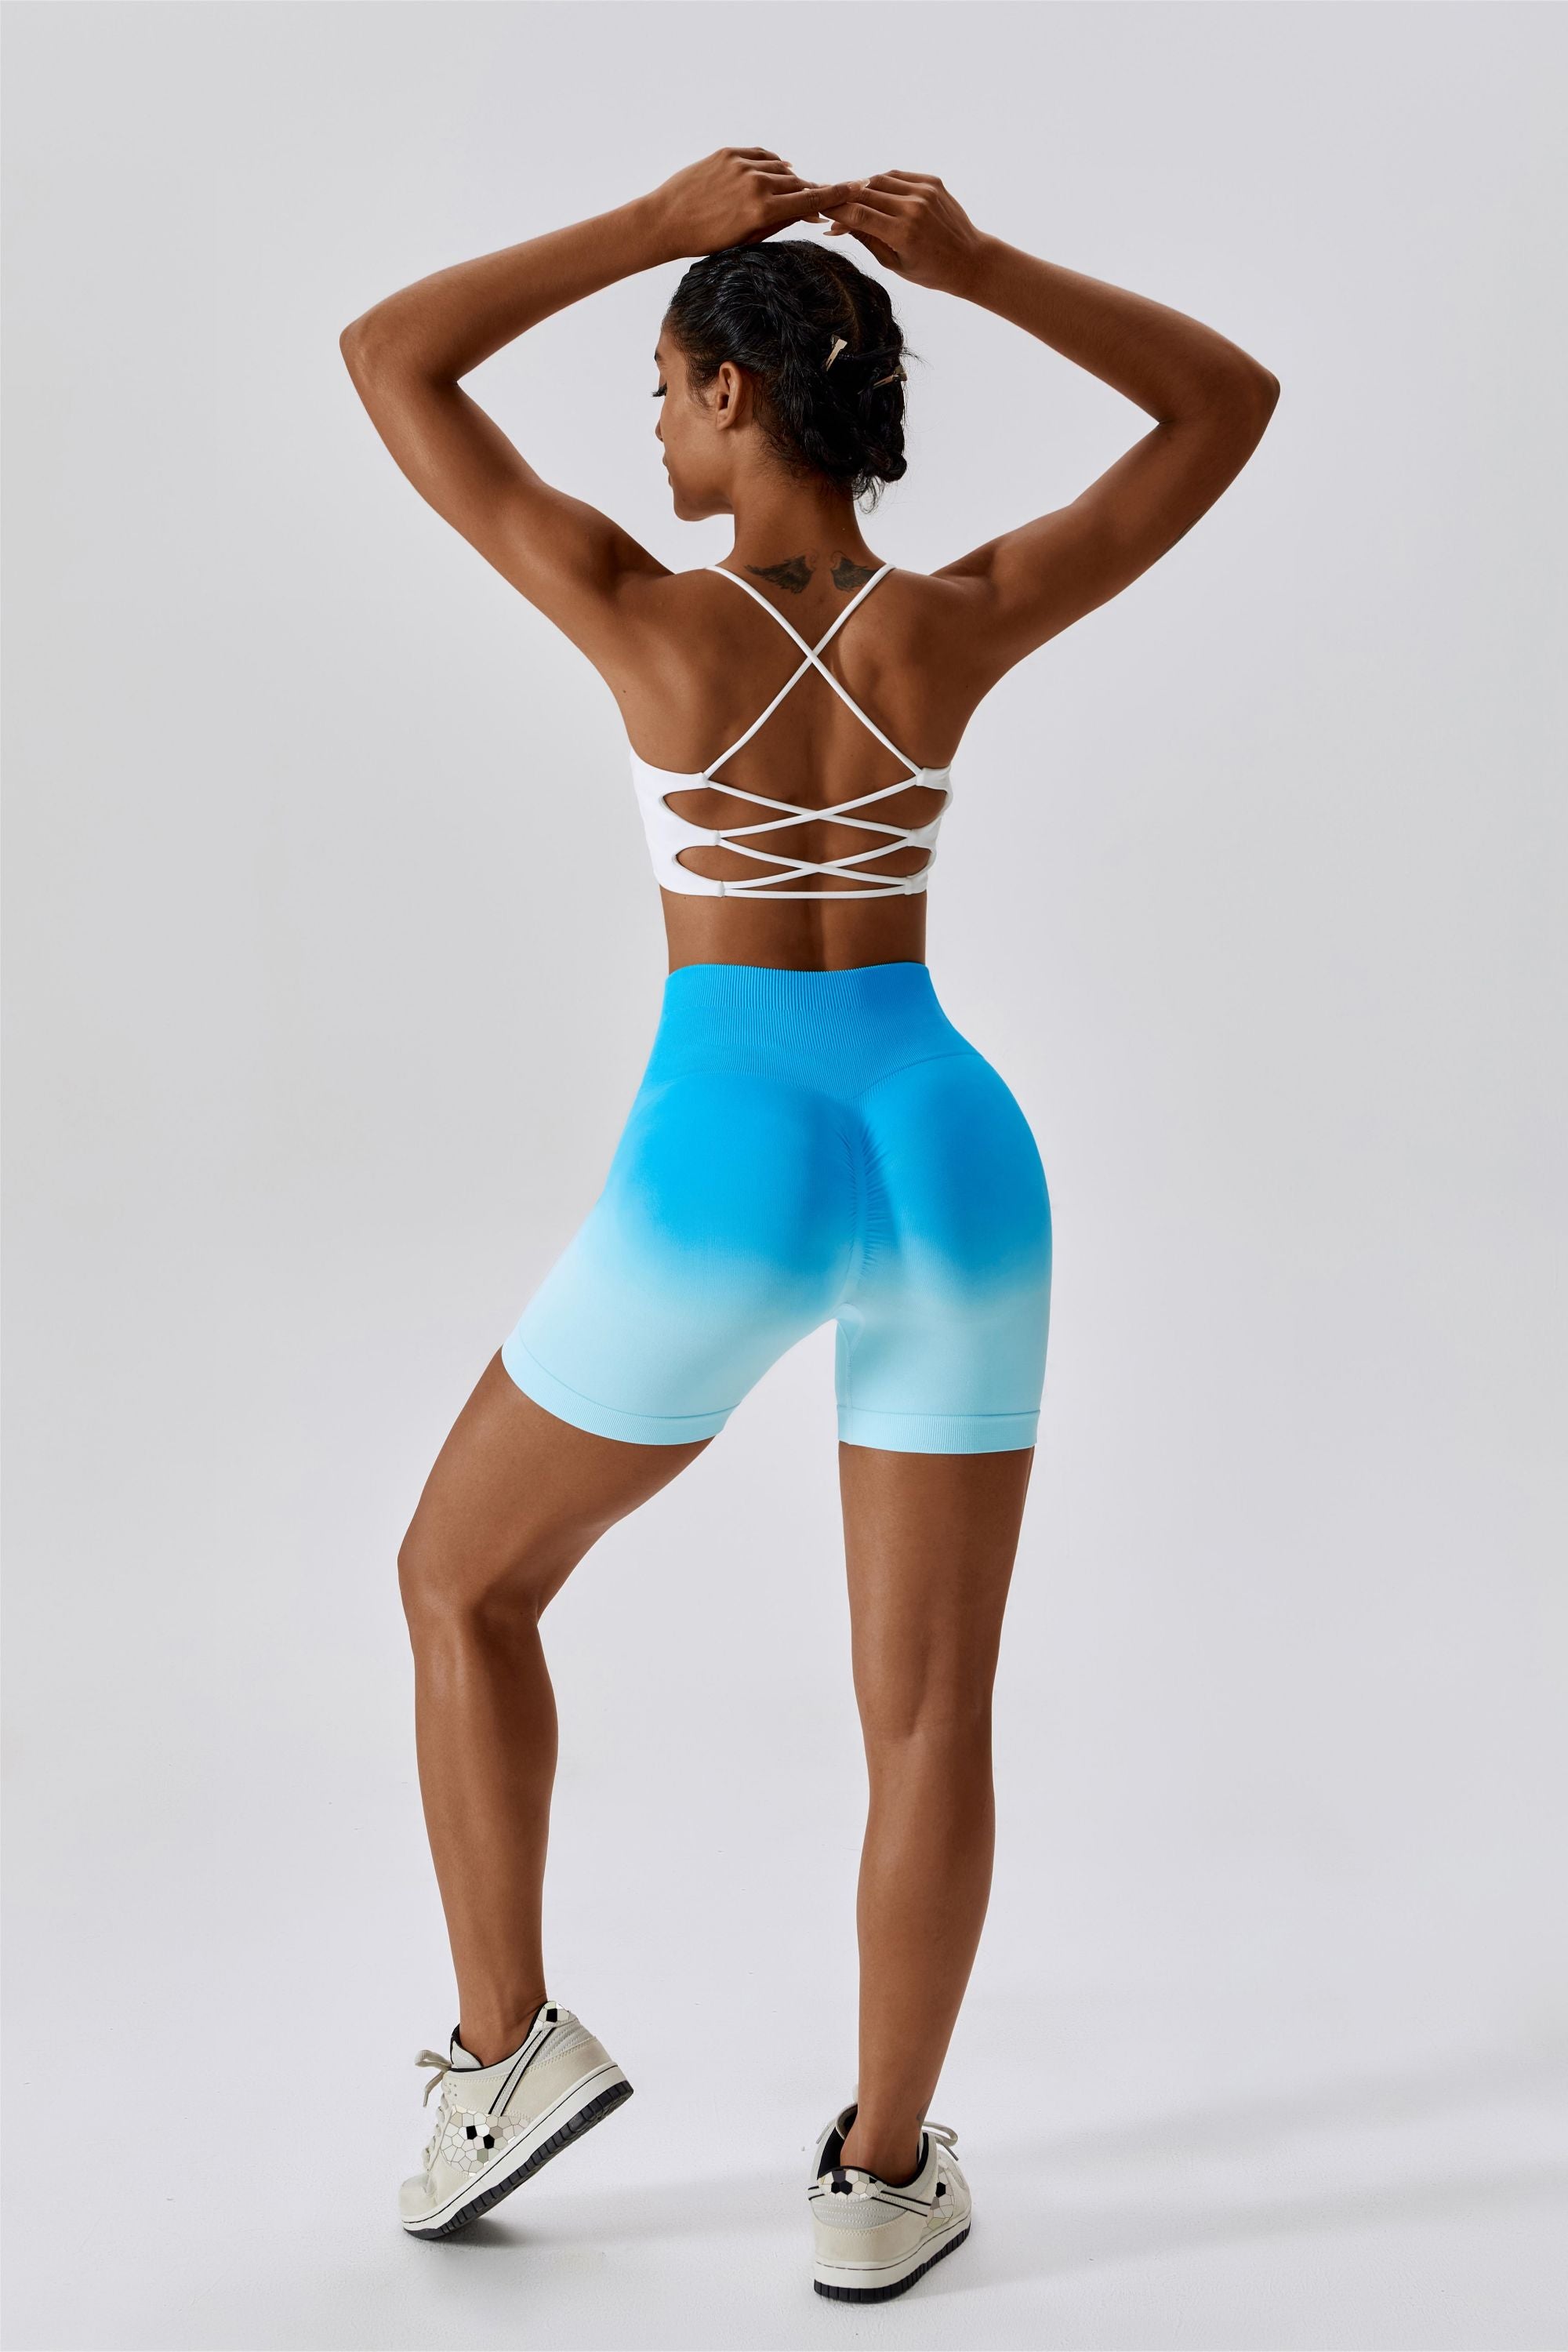 Ombre High-Rise Seamless Scrunch Butt Lifting Biker Shorts for Women –  Zioccie